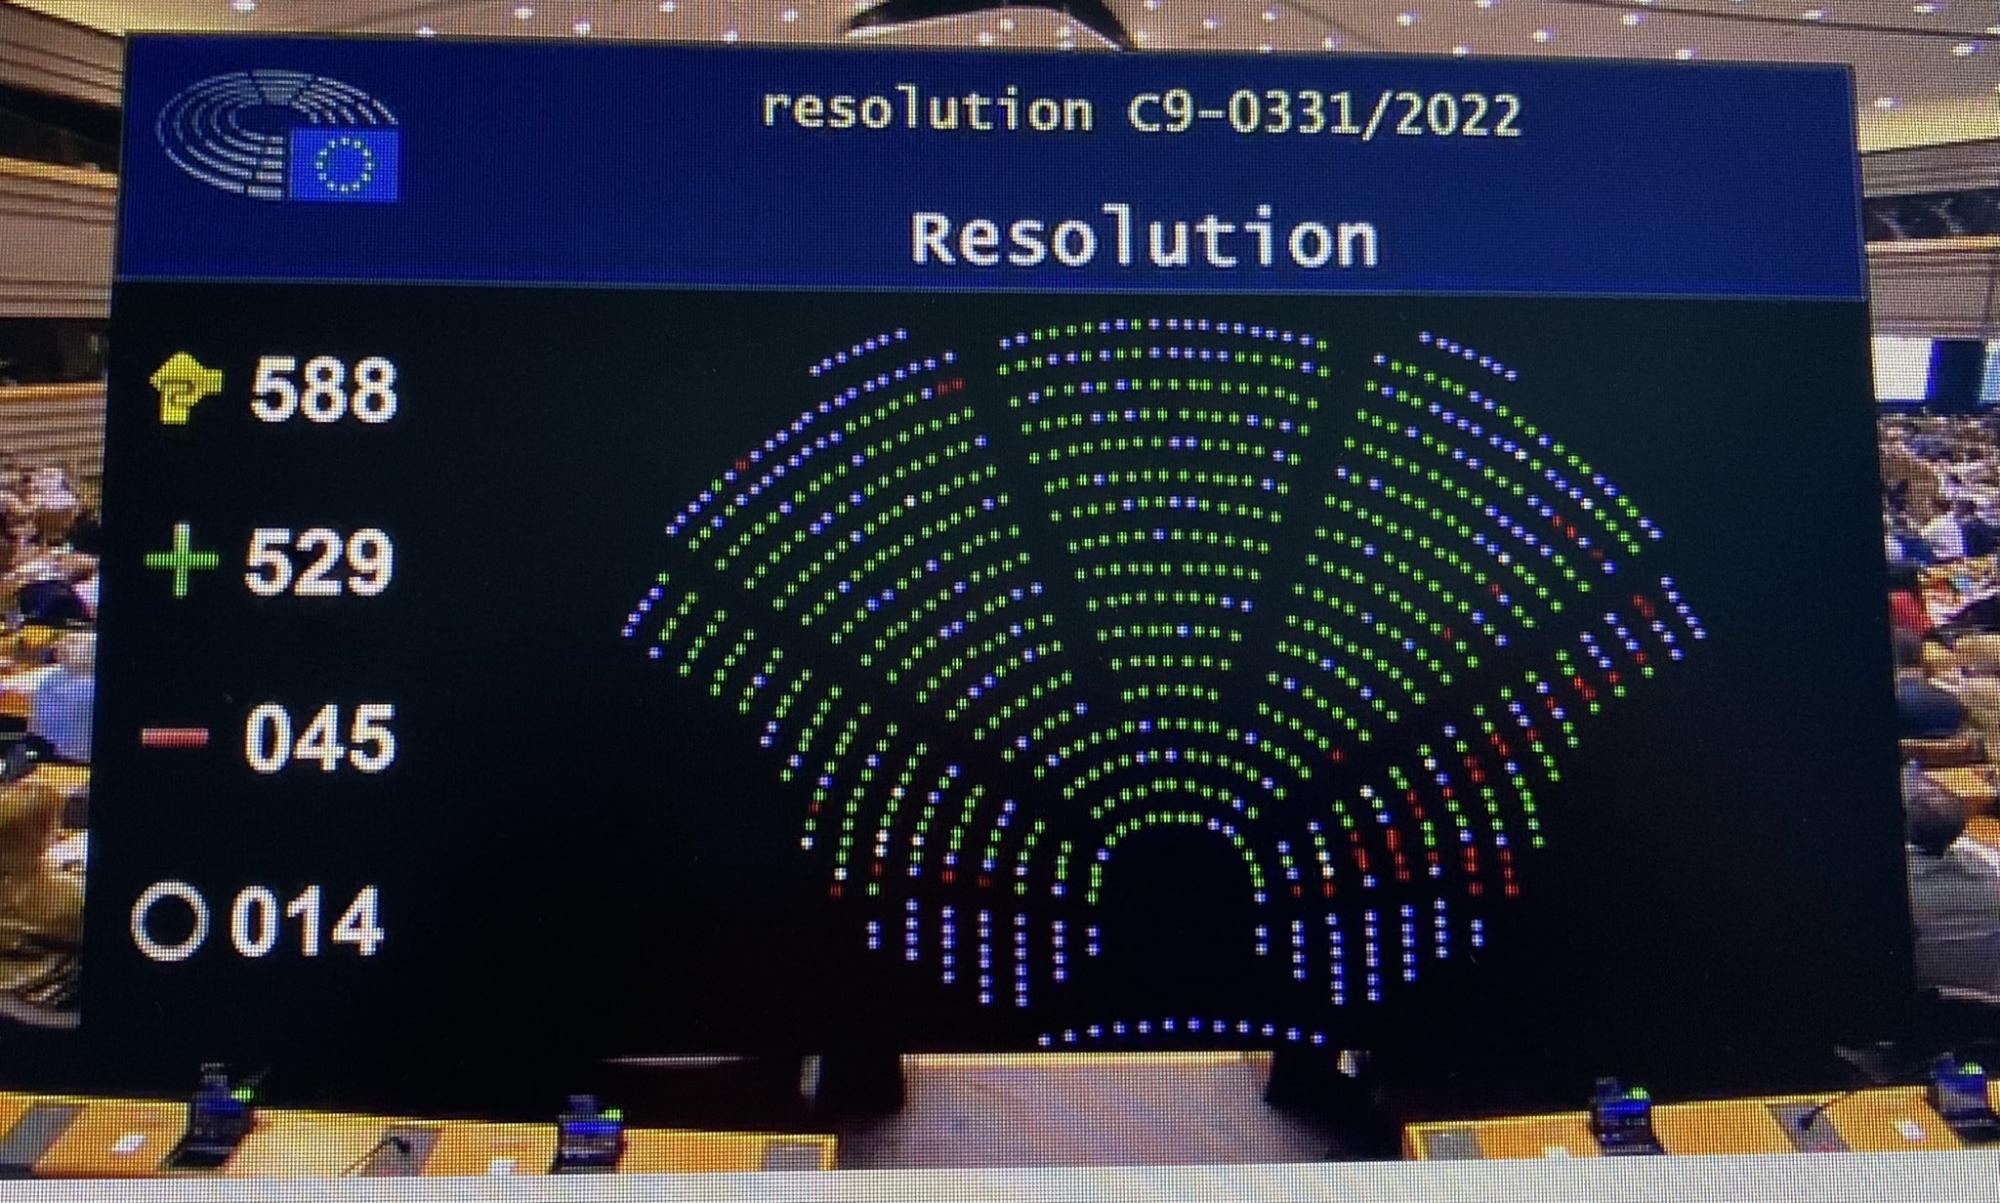 Європарламент ухвалив резолюцію про статус кандидата ЄС для України